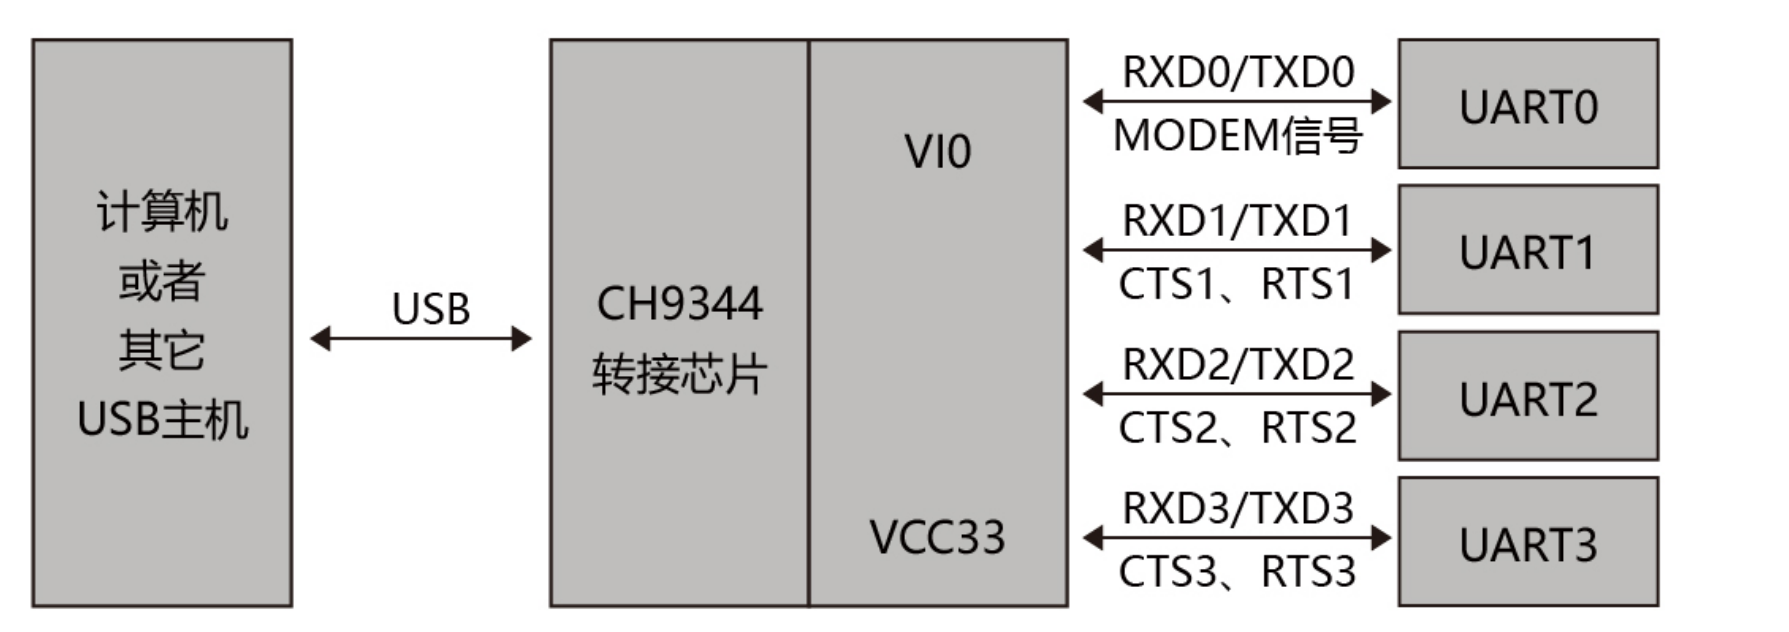 USB转4串口芯片CH9344概述